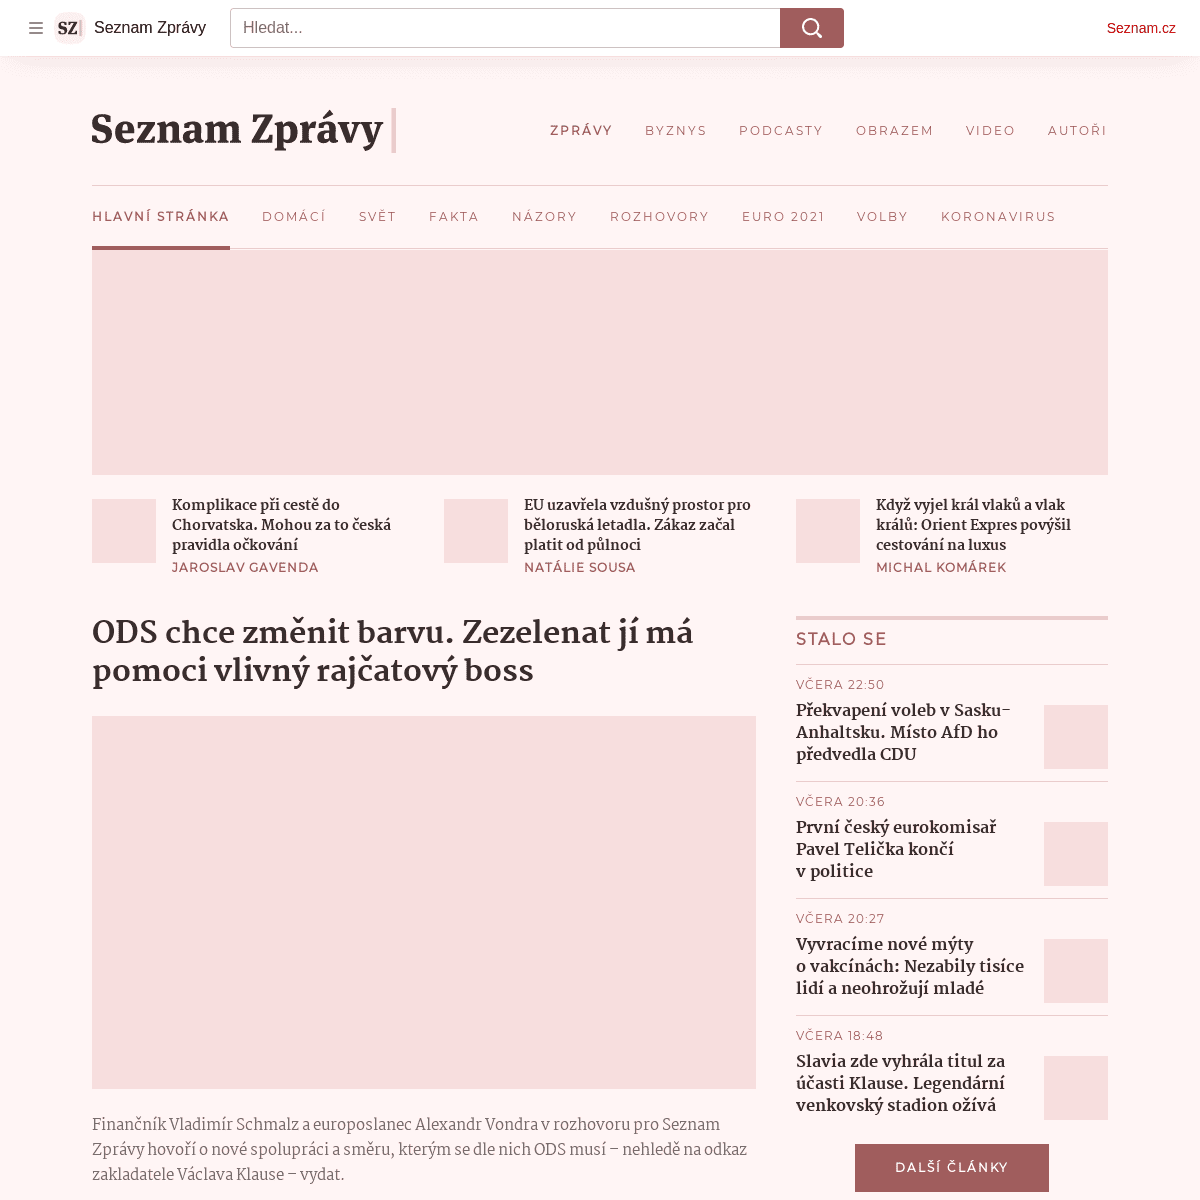 A complete backup of https://seznamzpravy.cz